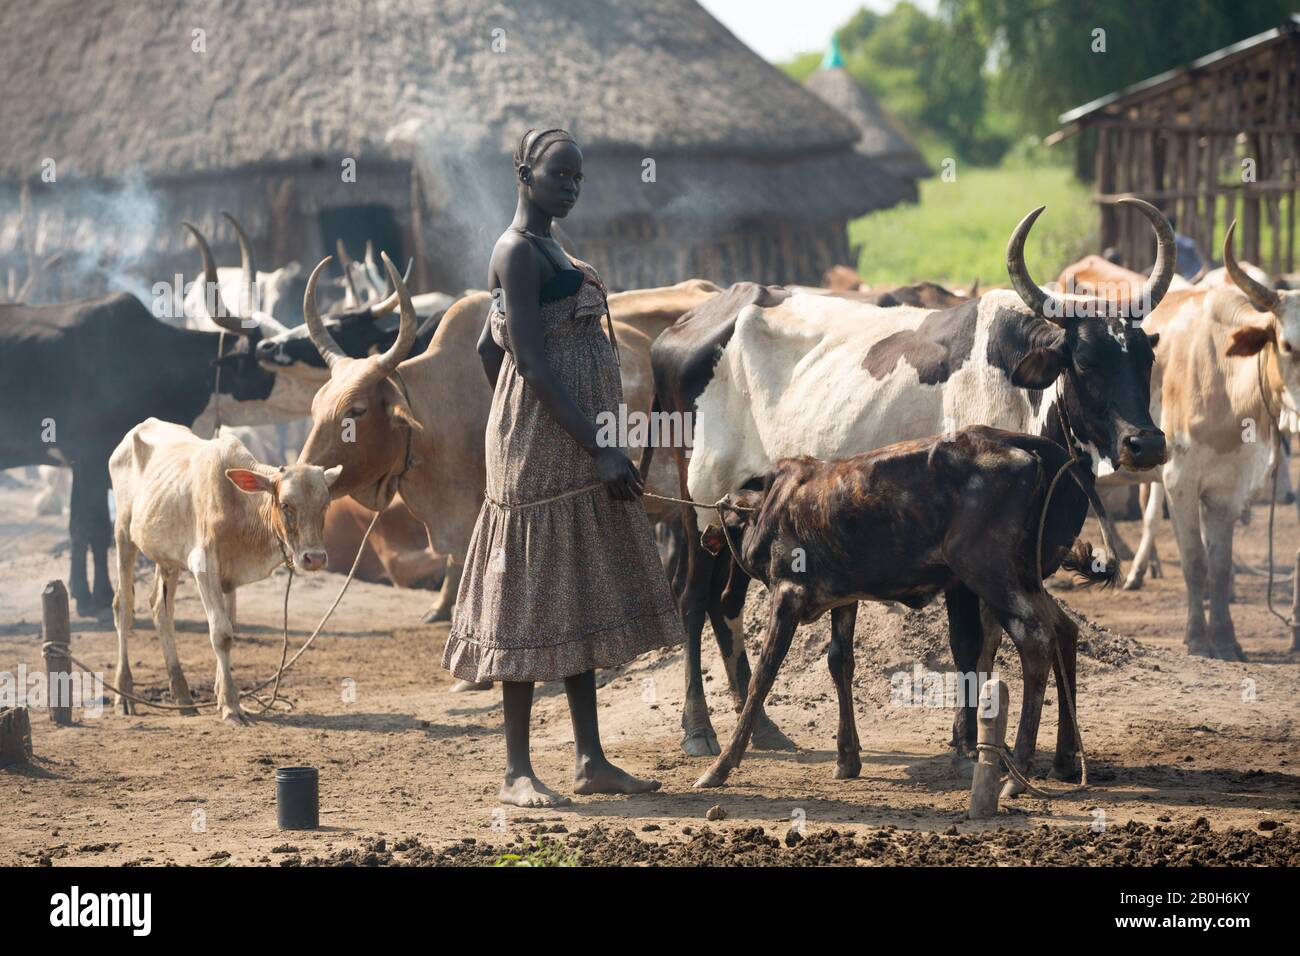 31.10.2019, Belinkum, Gambela, Äthiopien - Rinderzüchter der äthiopischen Volksgruppe Nuer. In einem traditionellen Dorf steht eine Rinderherde dazwischen Stockfoto